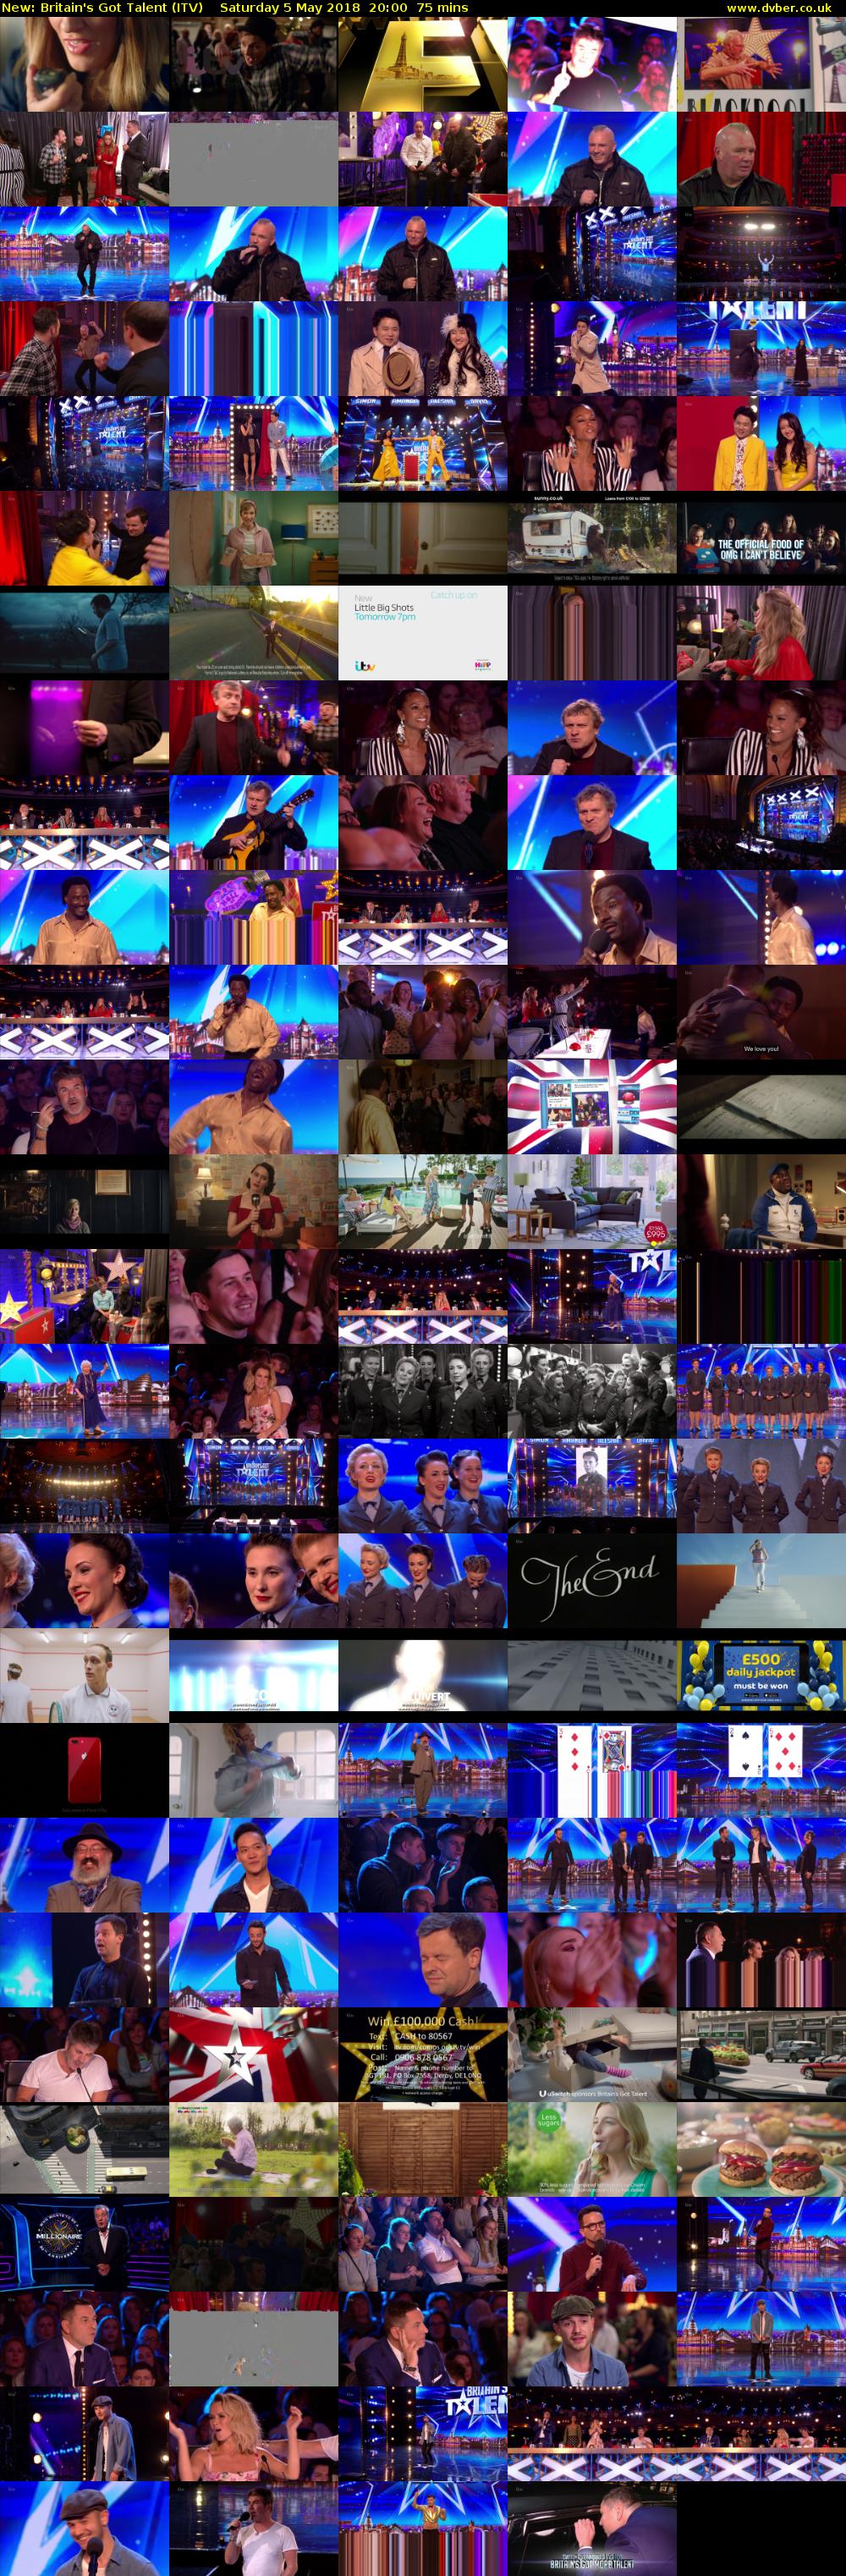 Britain's Got Talent (ITV) Saturday 5 May 2018 20:00 - 21:15